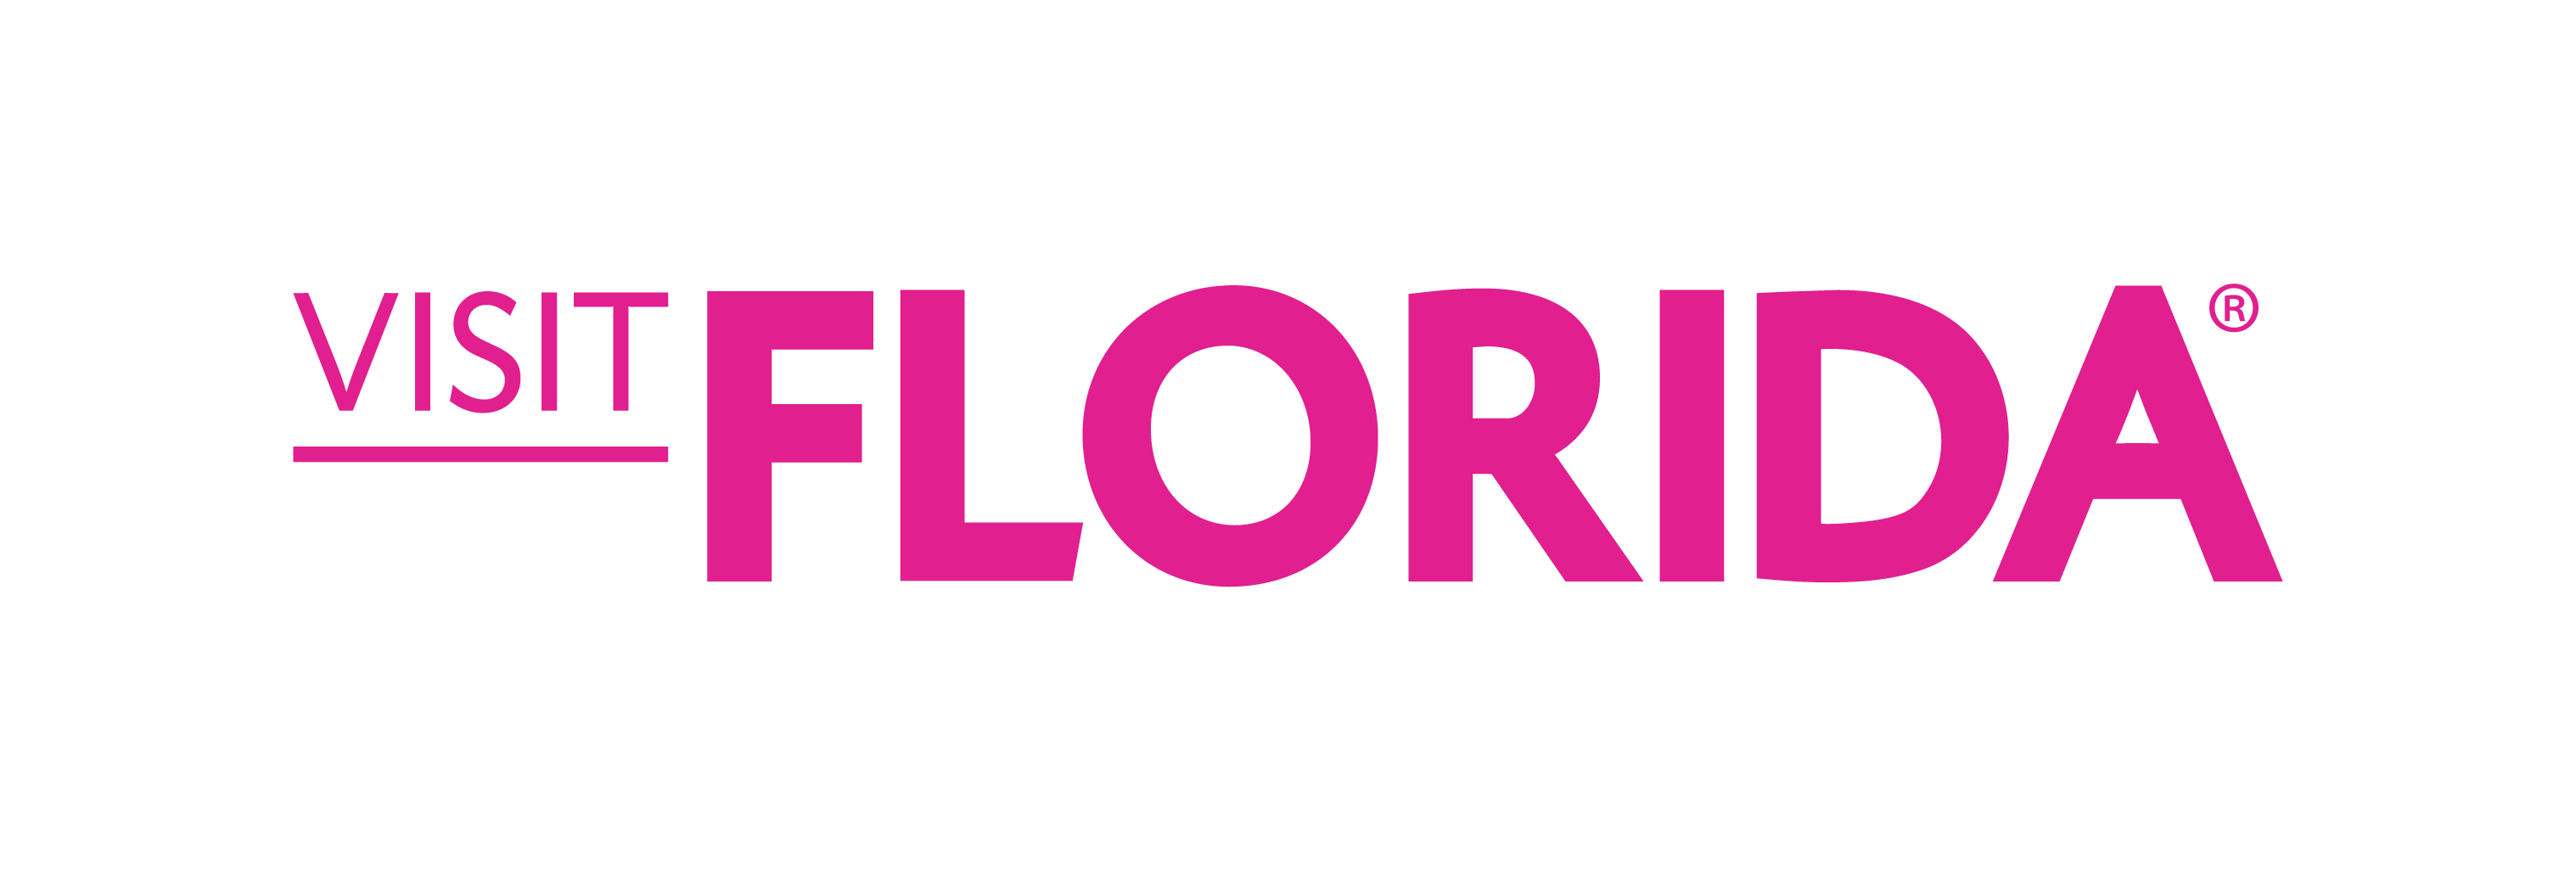 visitflorida.com logo